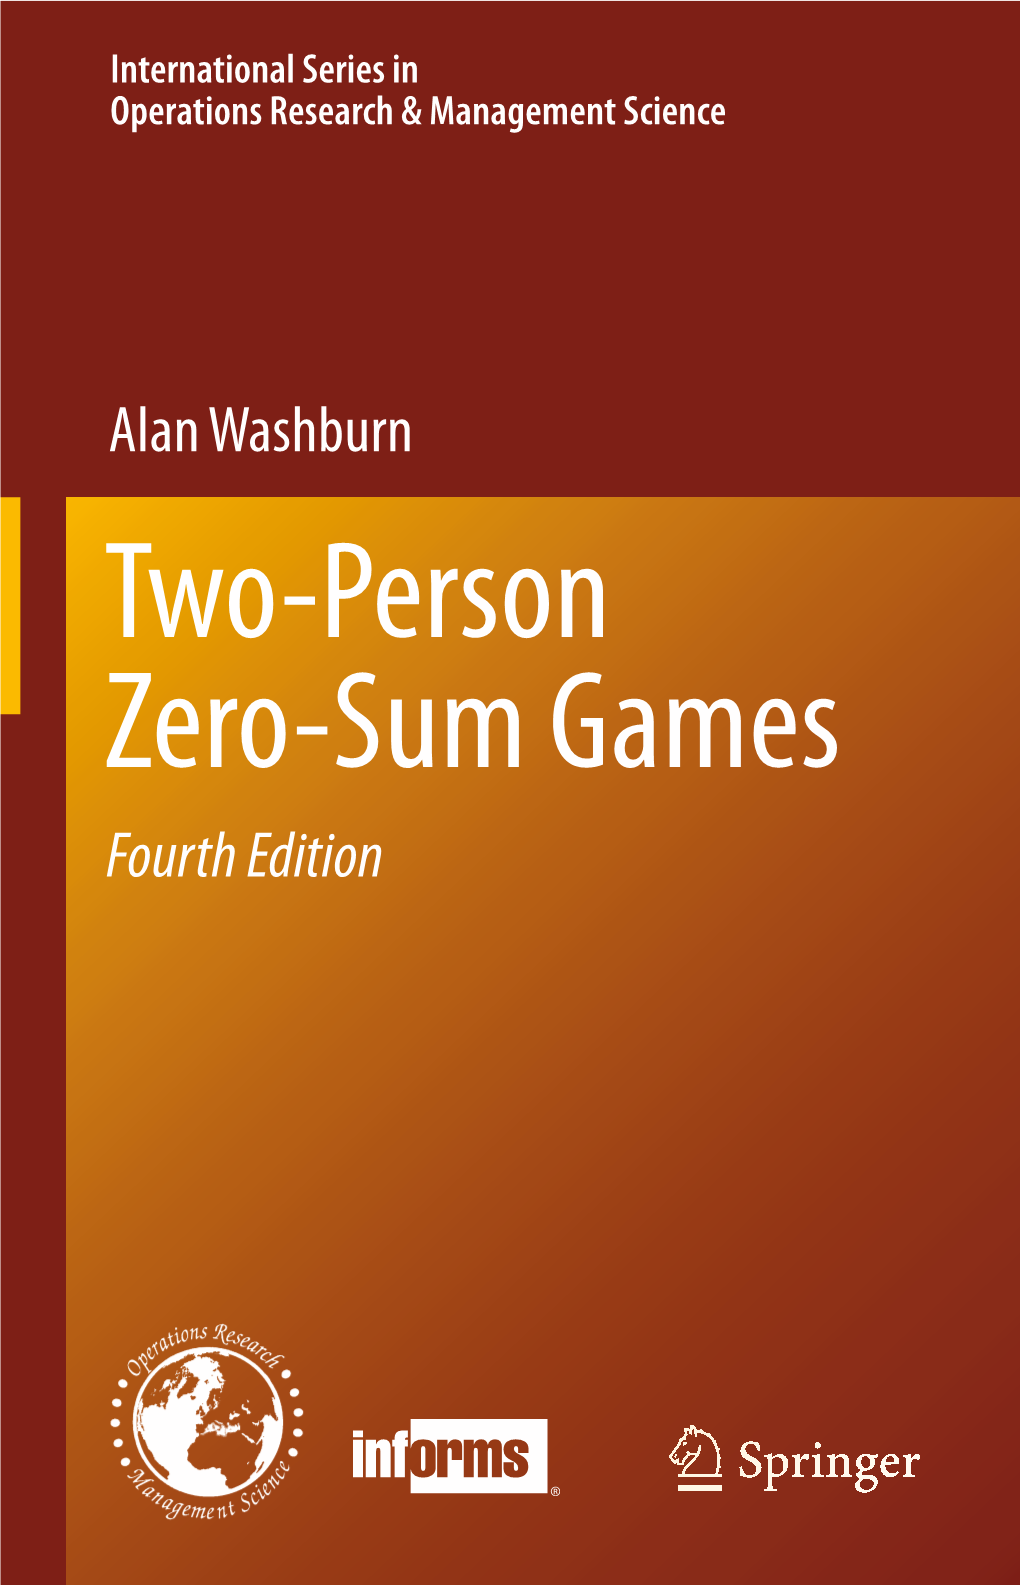 Alan Washburn Fourth Edition